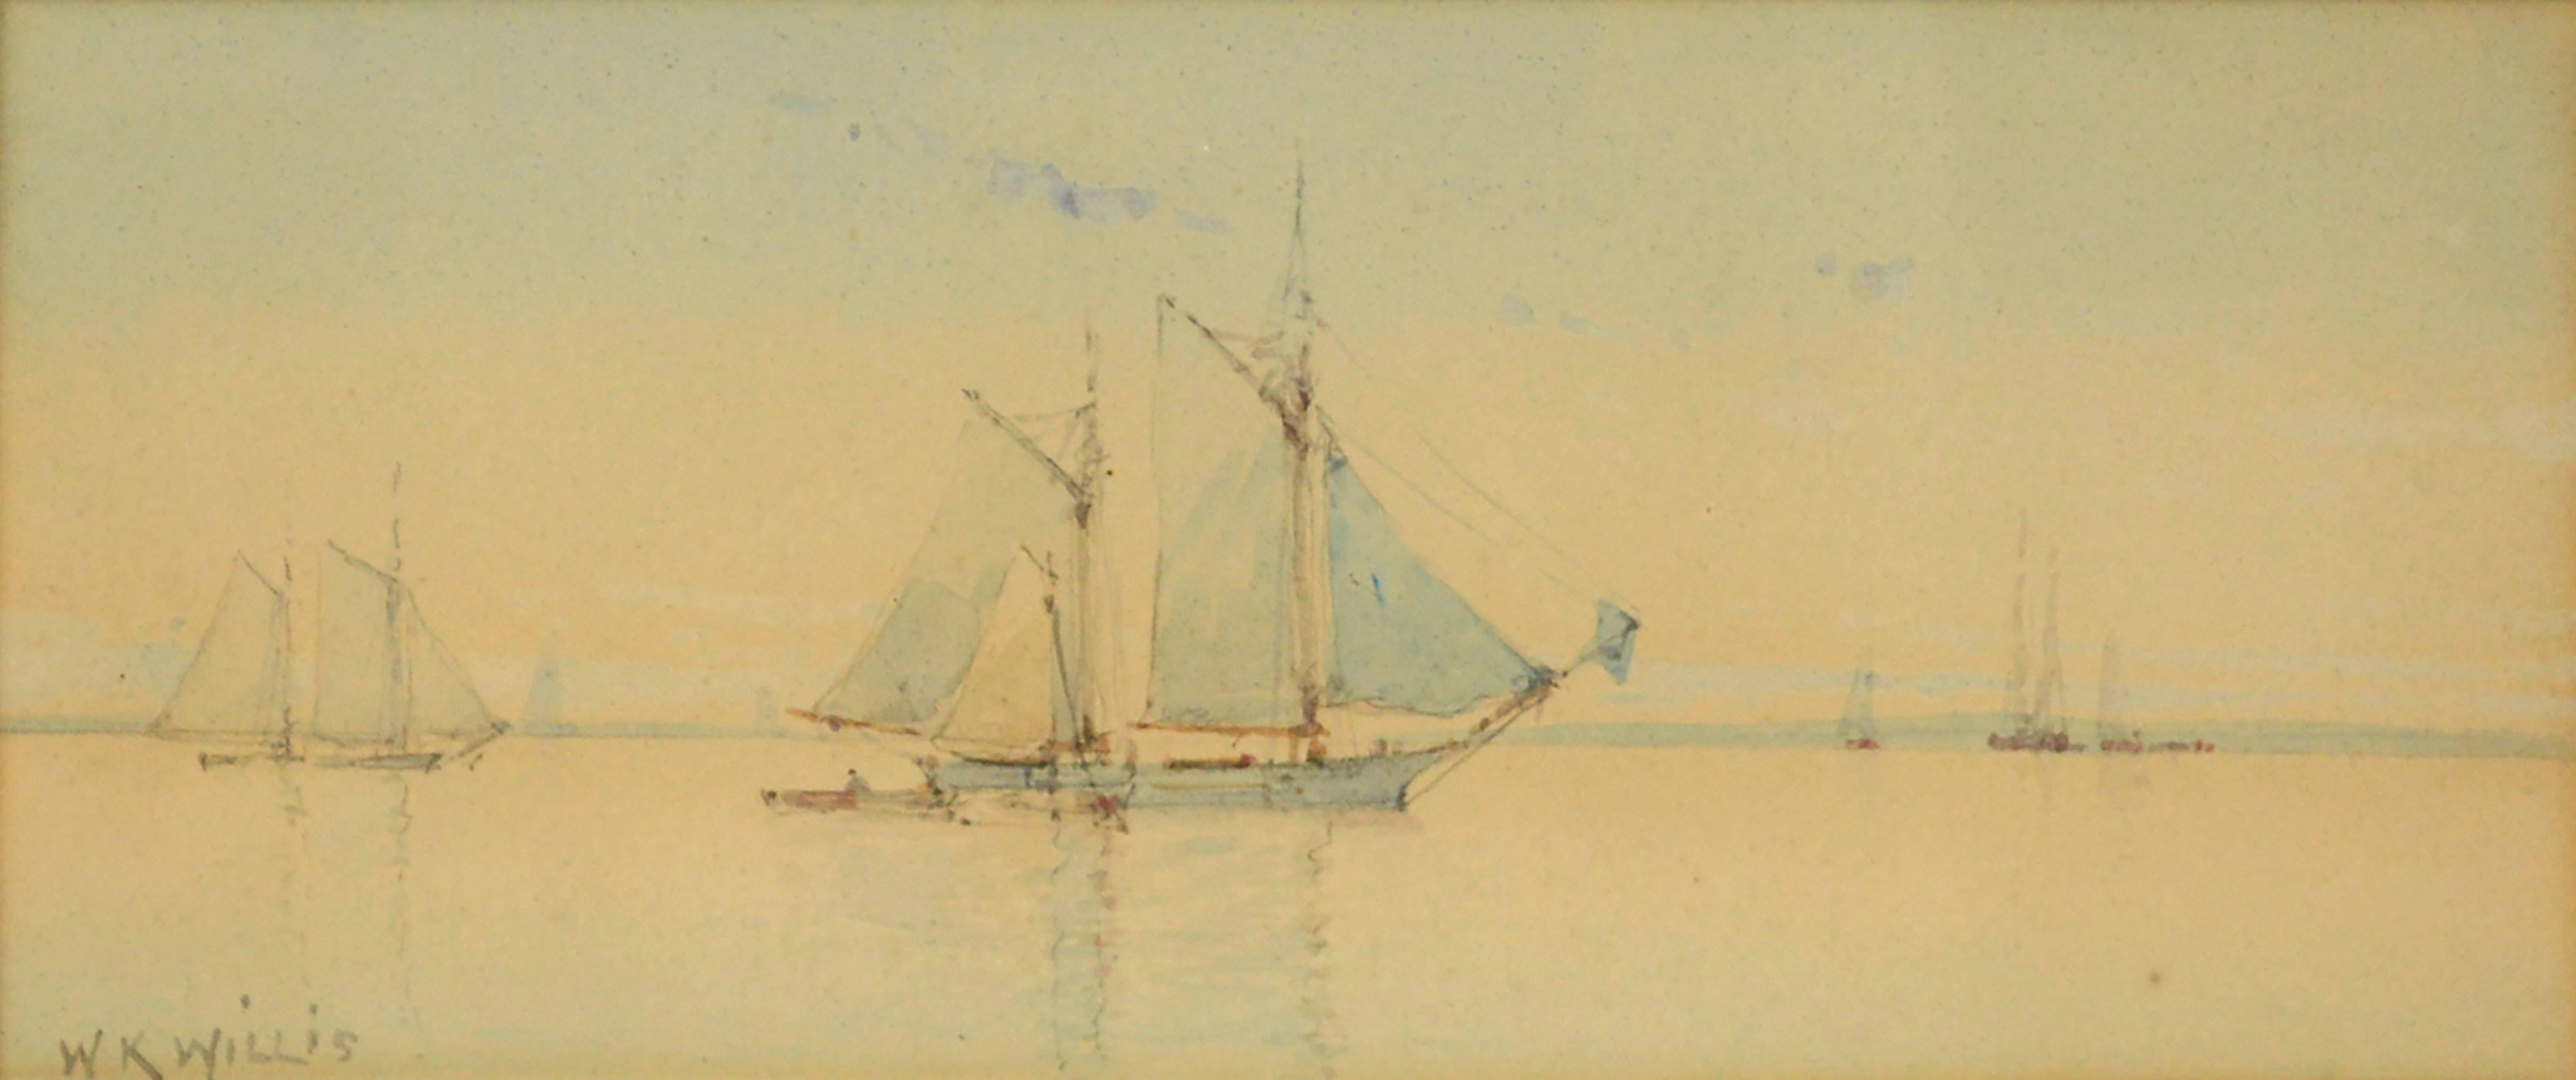 Schooners at Sail, maritime Aquarell-Seelandschaft des frühen 20. Jahrhunderts  – Art von W.K. Willis